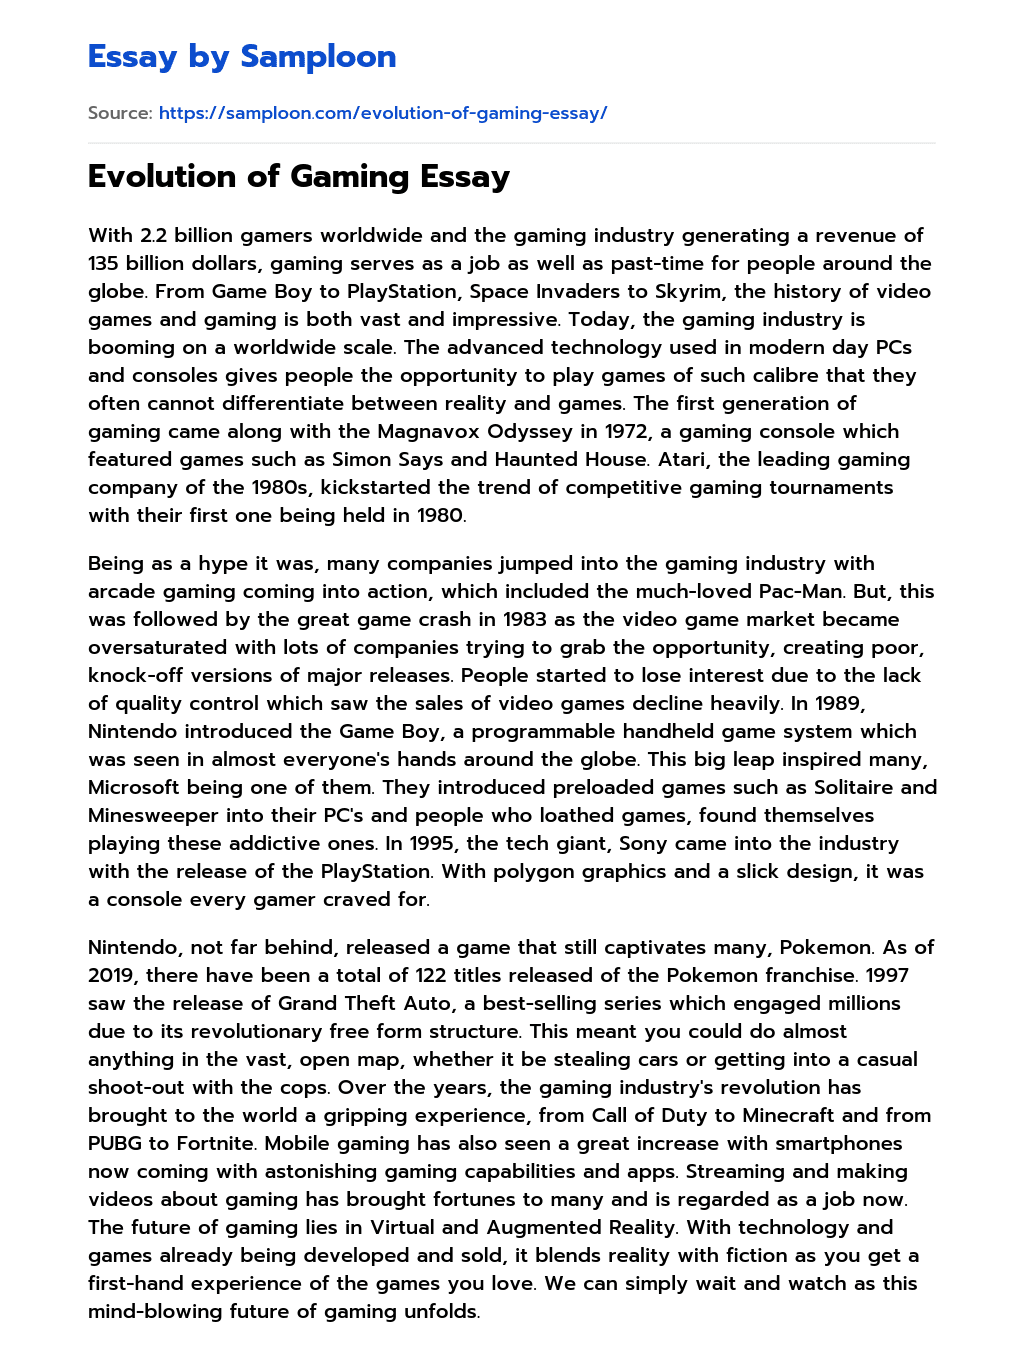 Evolution of Gaming Essay essay